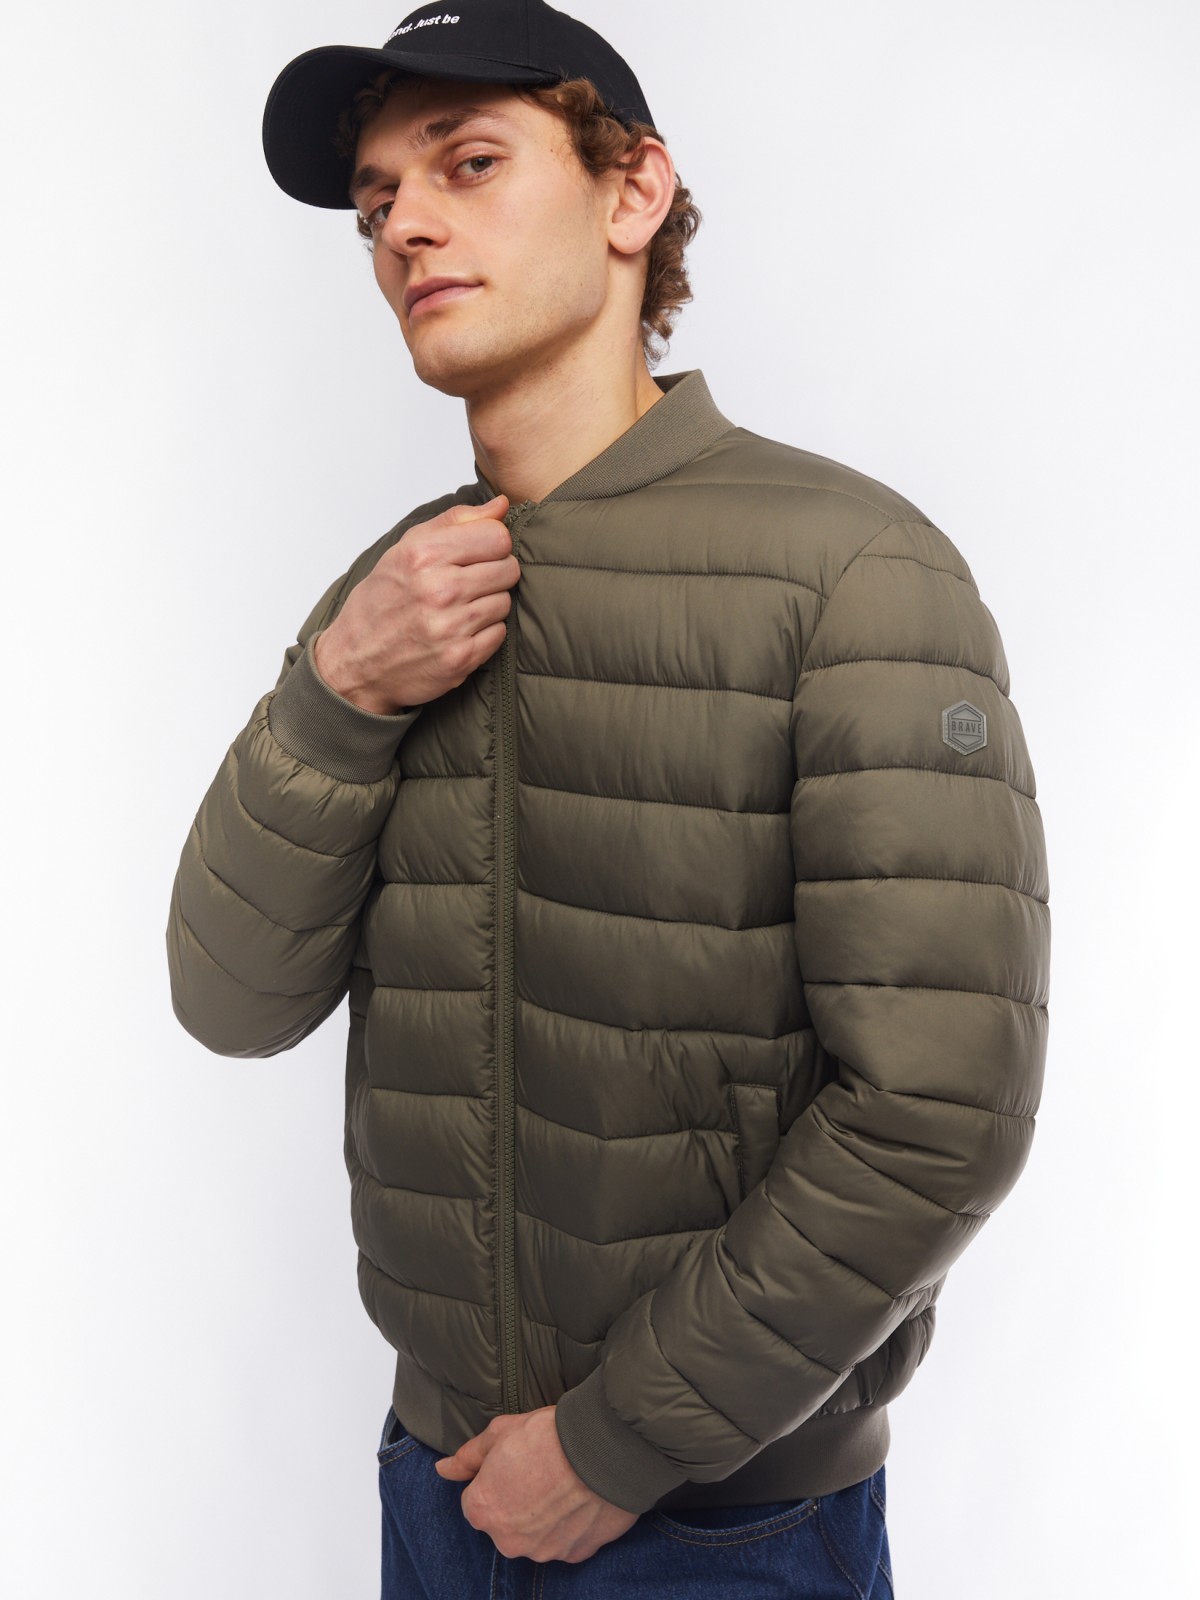 Лёгкая утеплённая куртка-бомбер с воротником-стойкой zolla 014125102104, цвет хаки, размер M